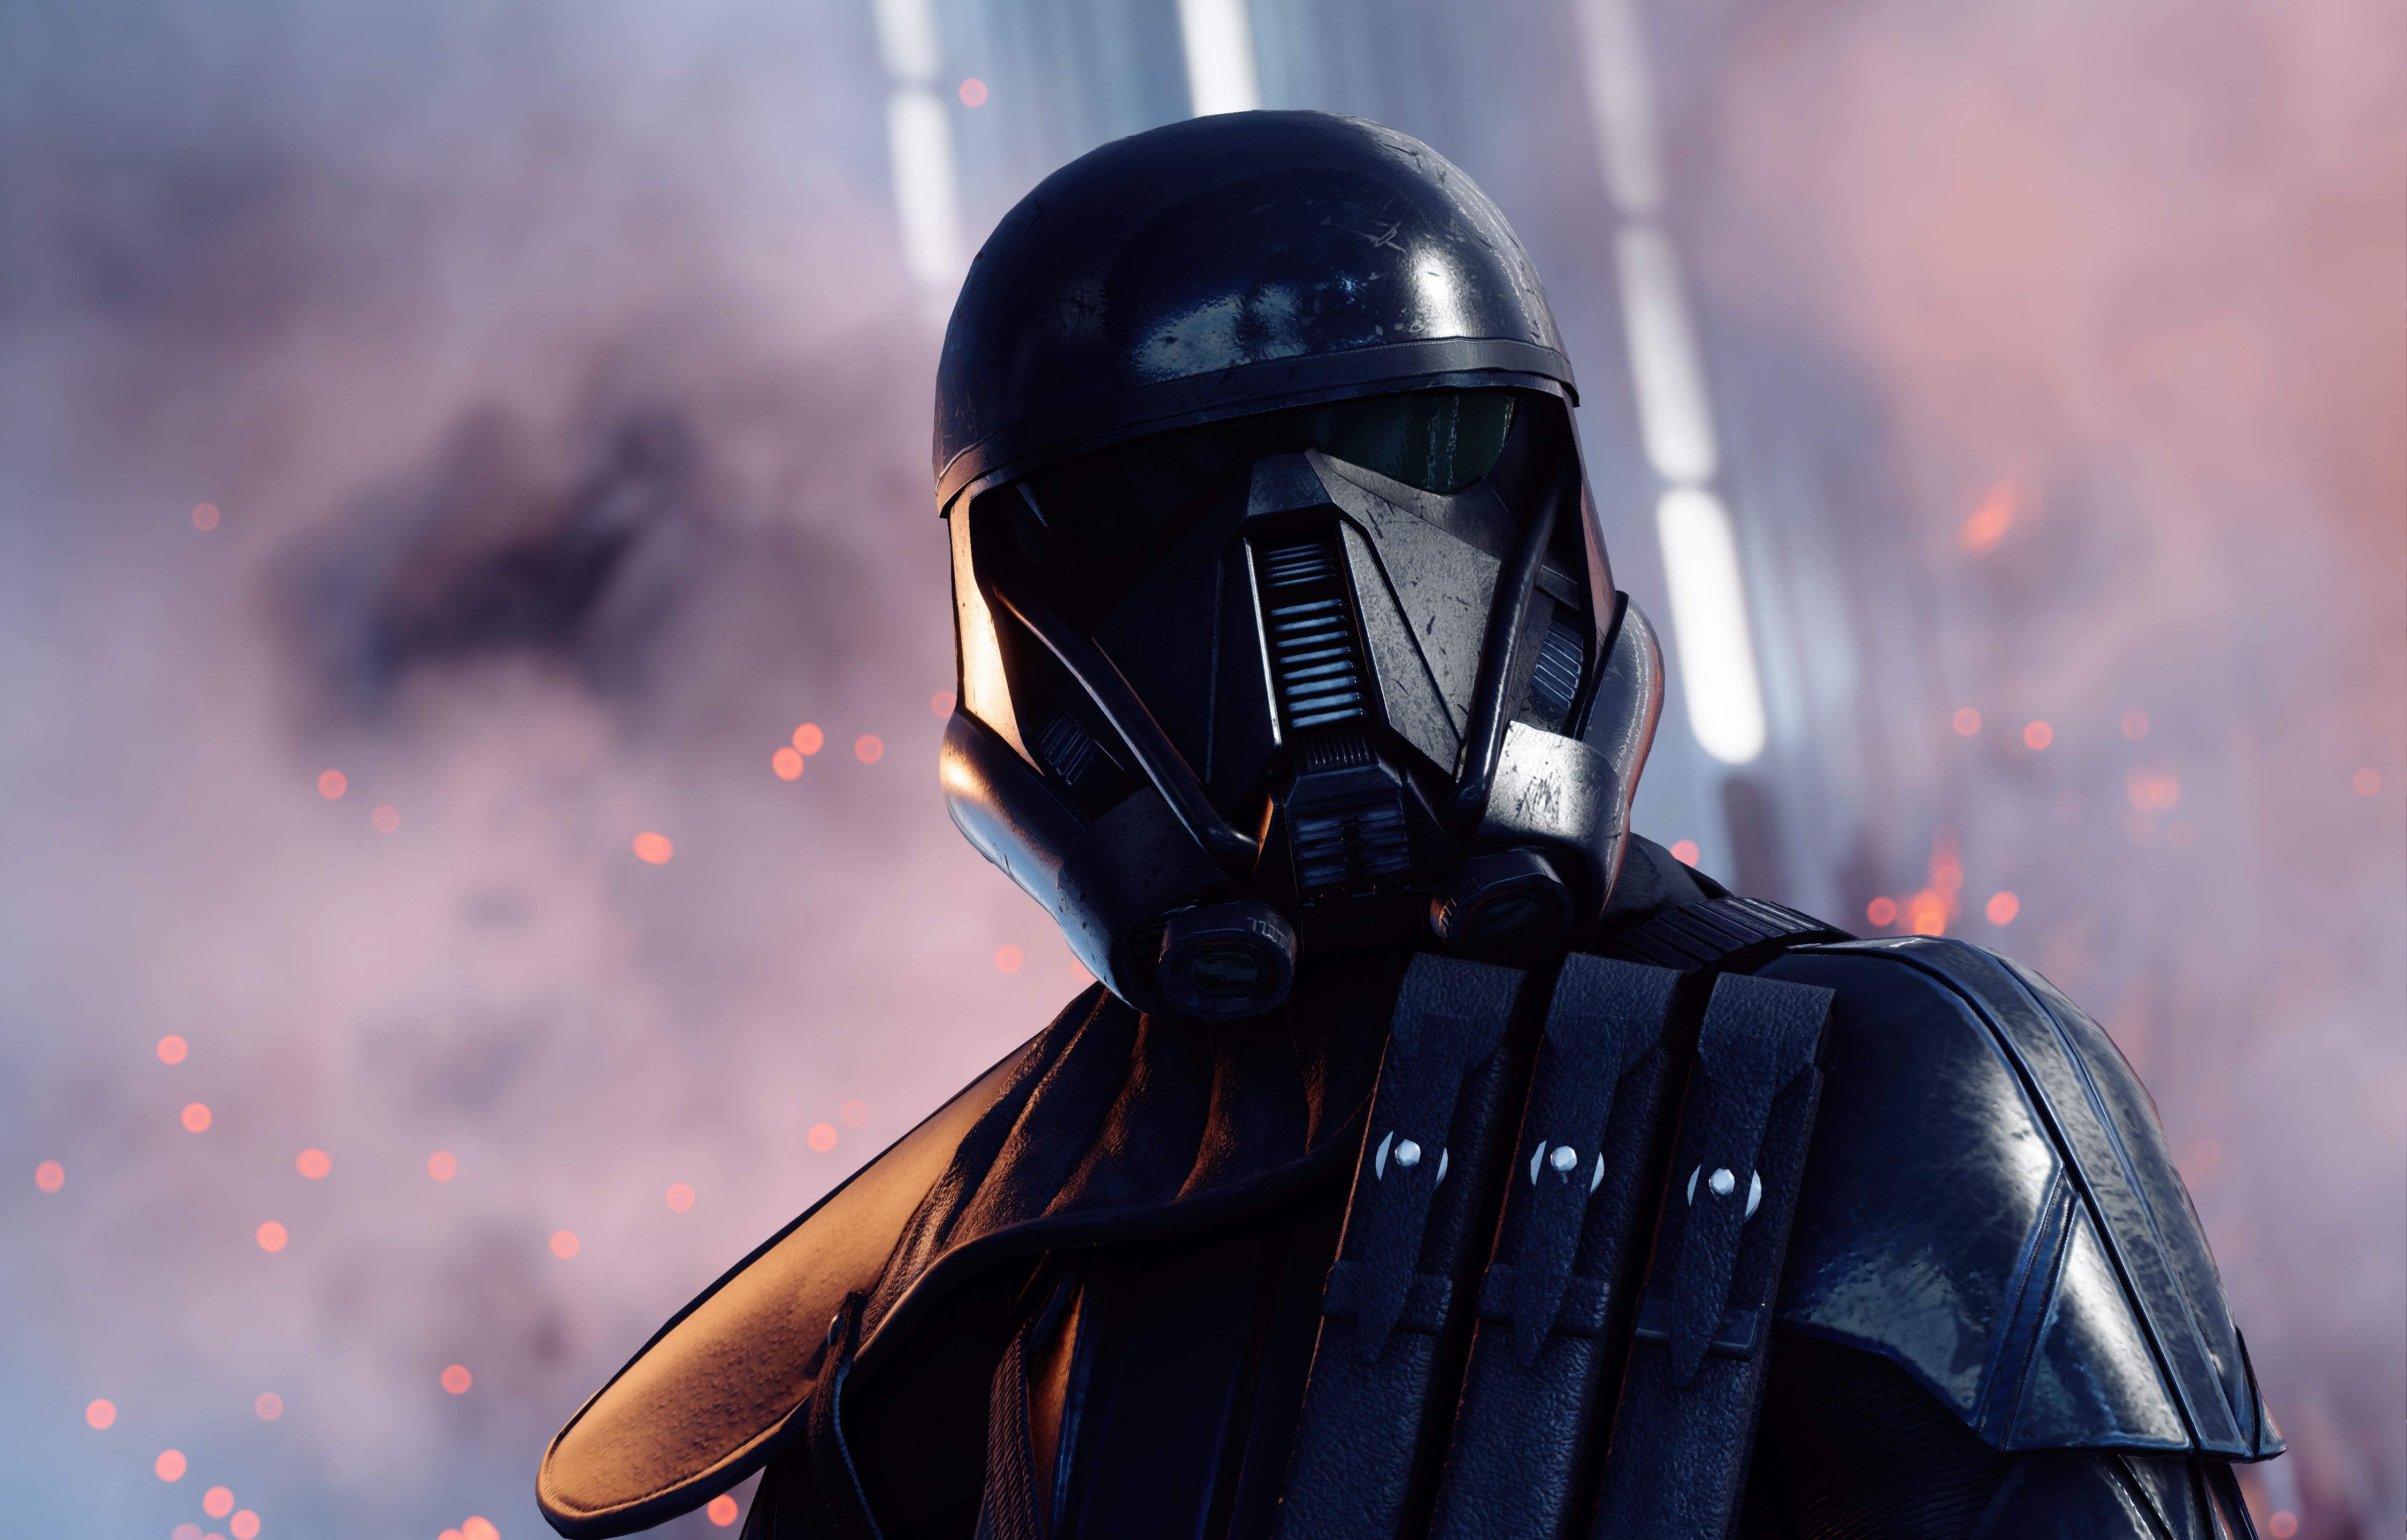 K, #Death trooper, #Star Wars Battlefront II. Games